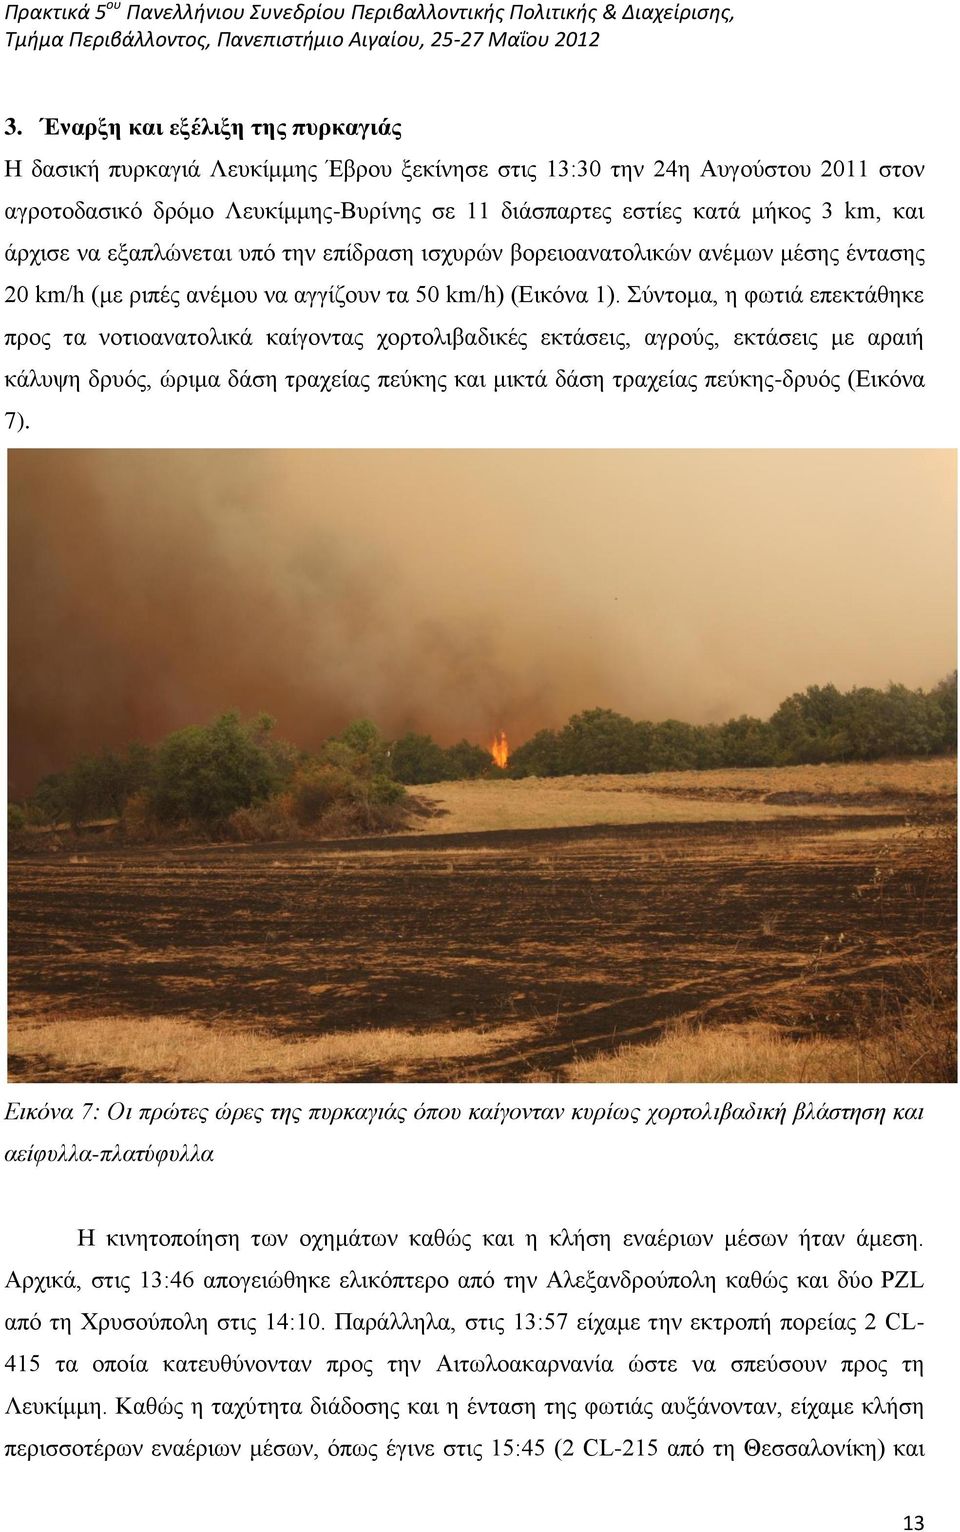 Σύντομα, η φωτιά επεκτάθηκε προς τα νοτιοανατολικά καίγοντας χορτολιβαδικές εκτάσεις, αγρούς, εκτάσεις με αραιή κάλυψη δρυός, ώριμα δάση τραχείας πεύκης και μικτά δάση τραχείας πεύκης-δρυός (Εικόνα